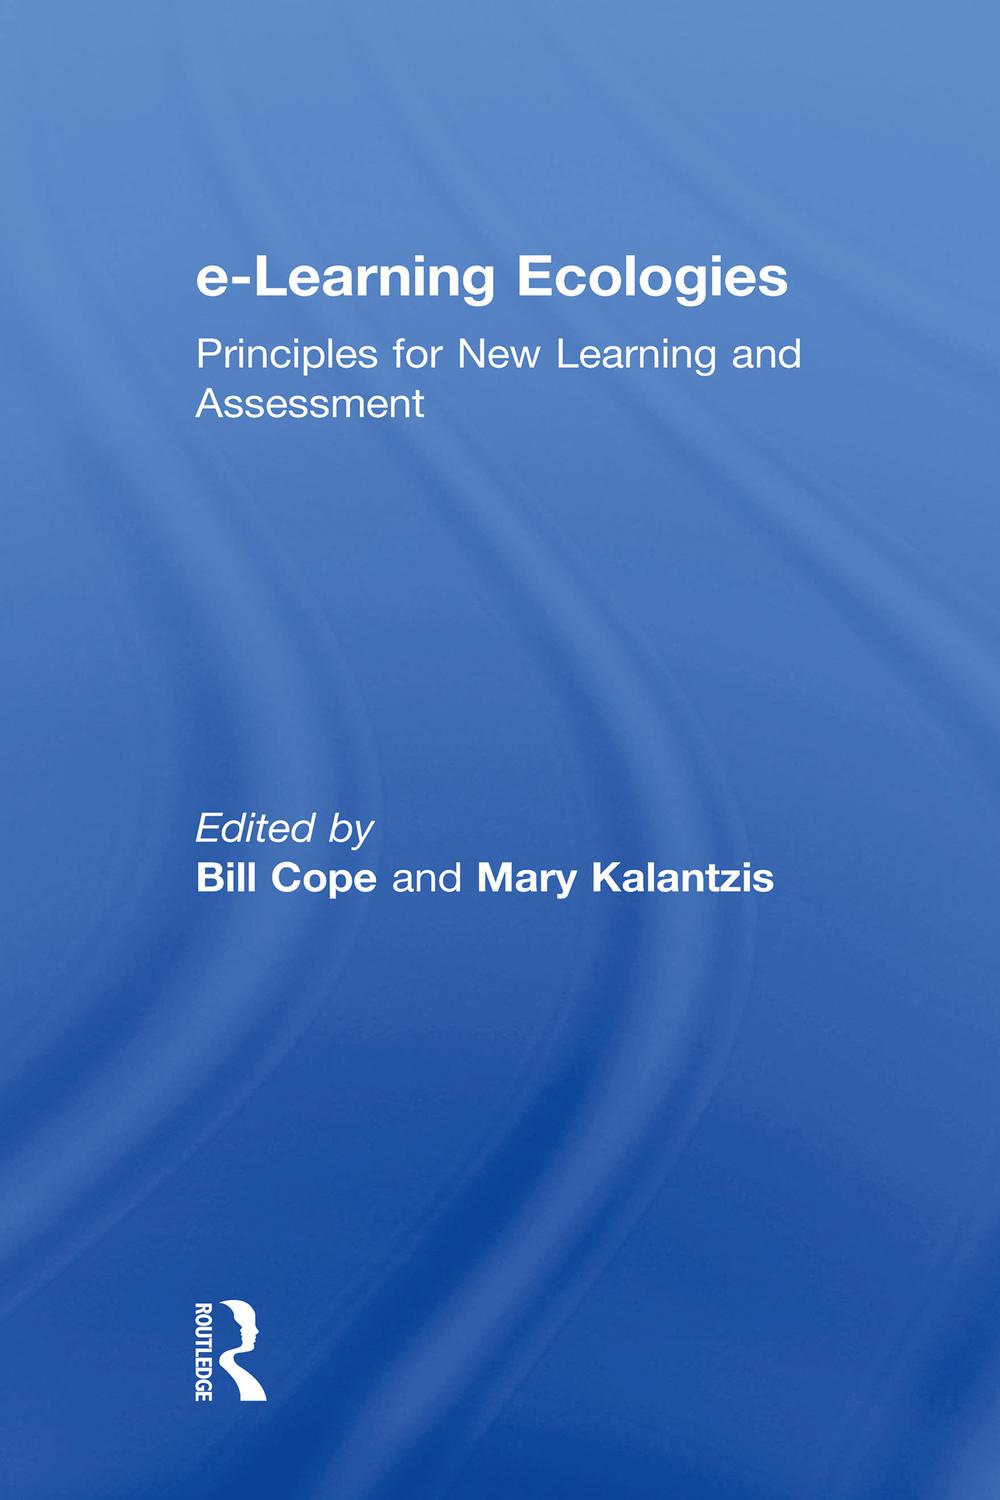 e-Learning Ecologies - Bill Cope, Mary Kalantzis